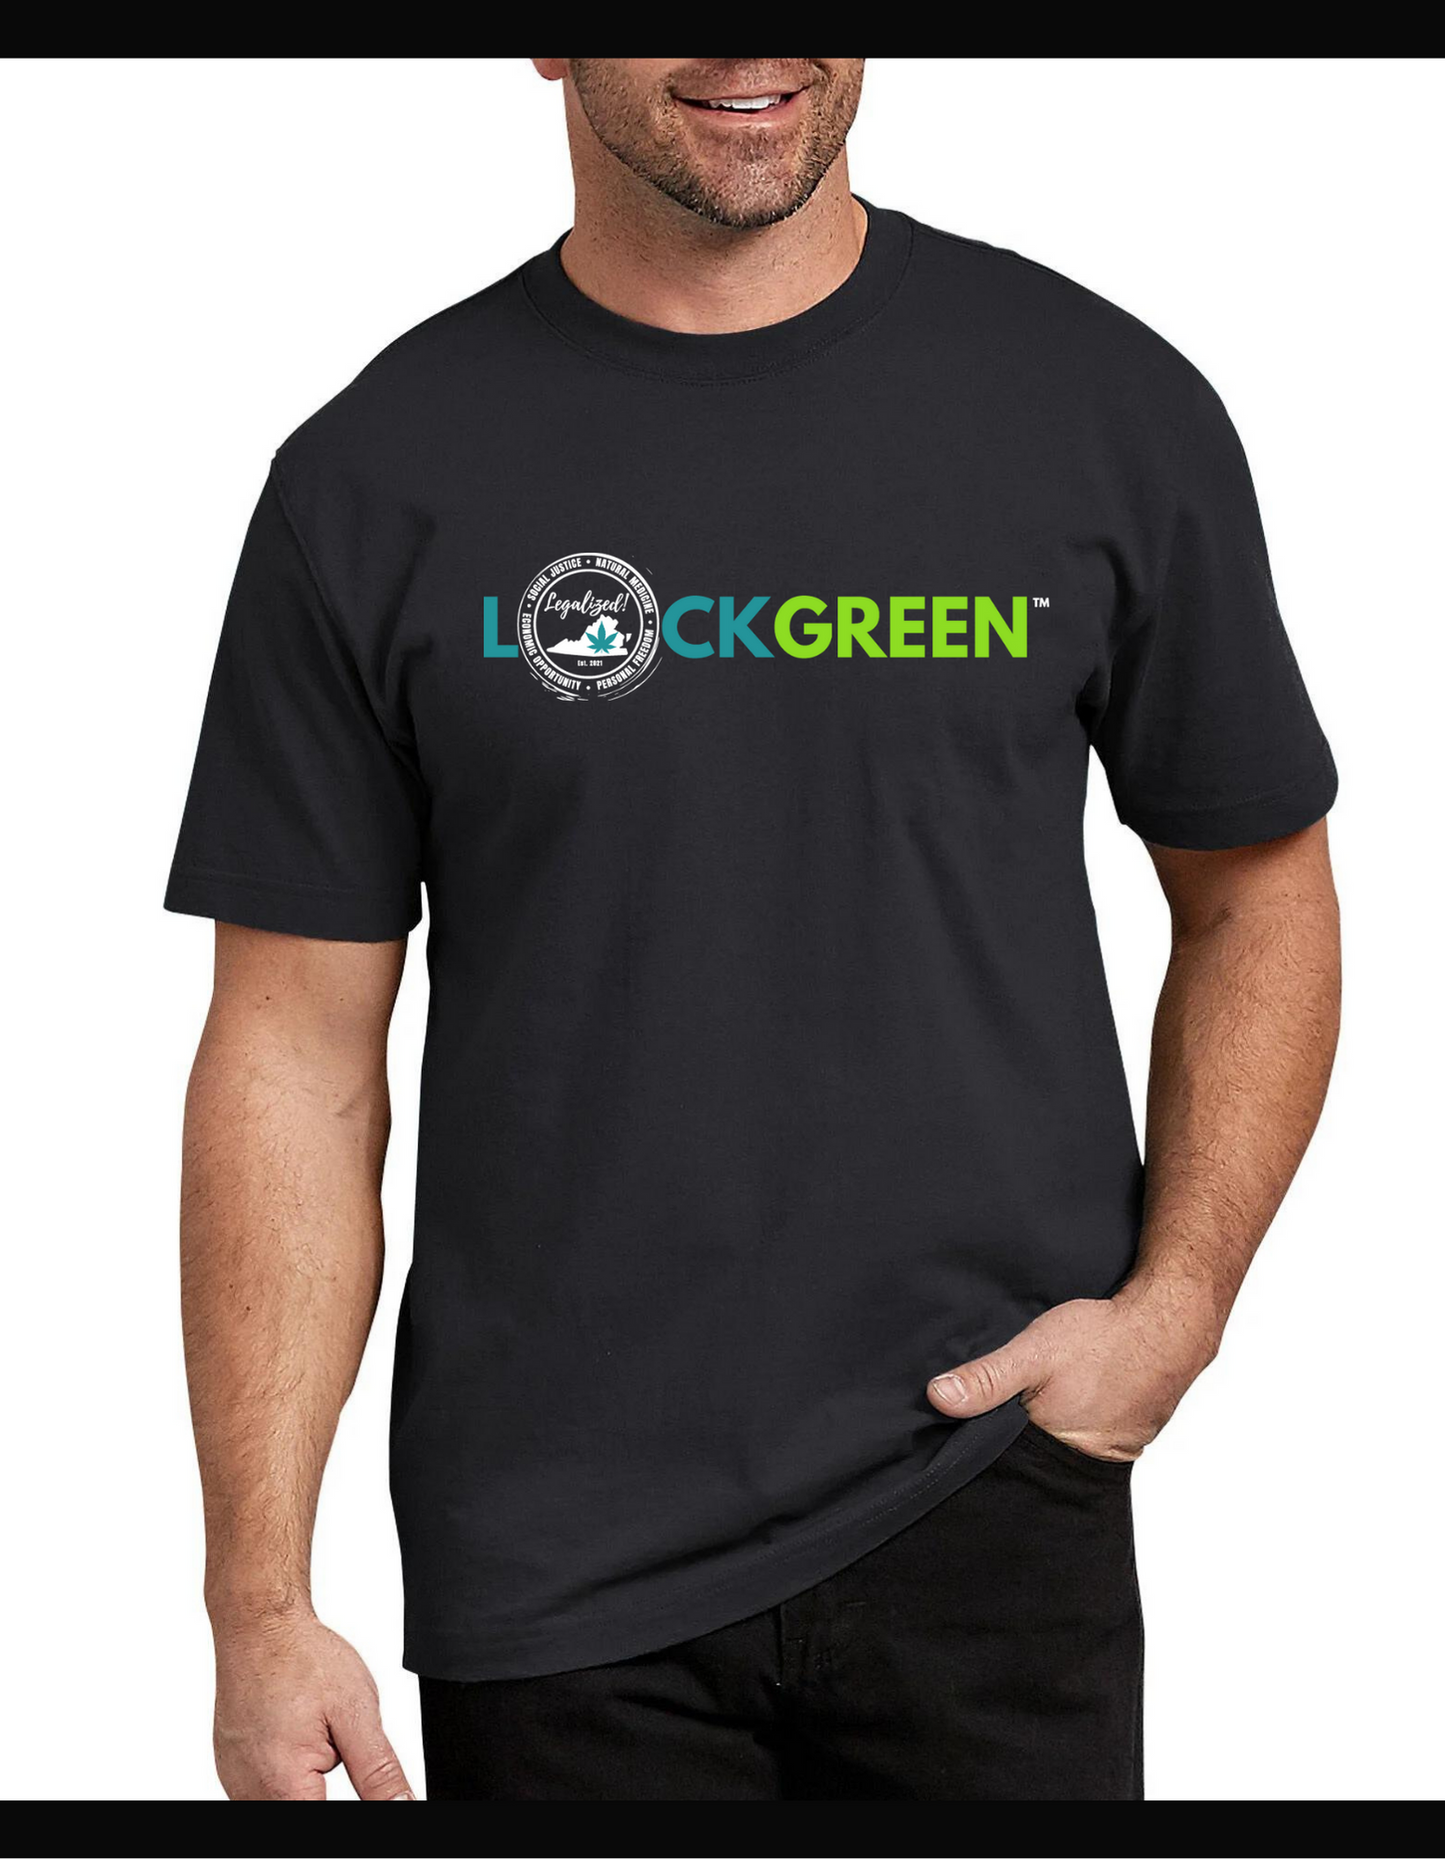 LOCKGREEN™ T-shirt